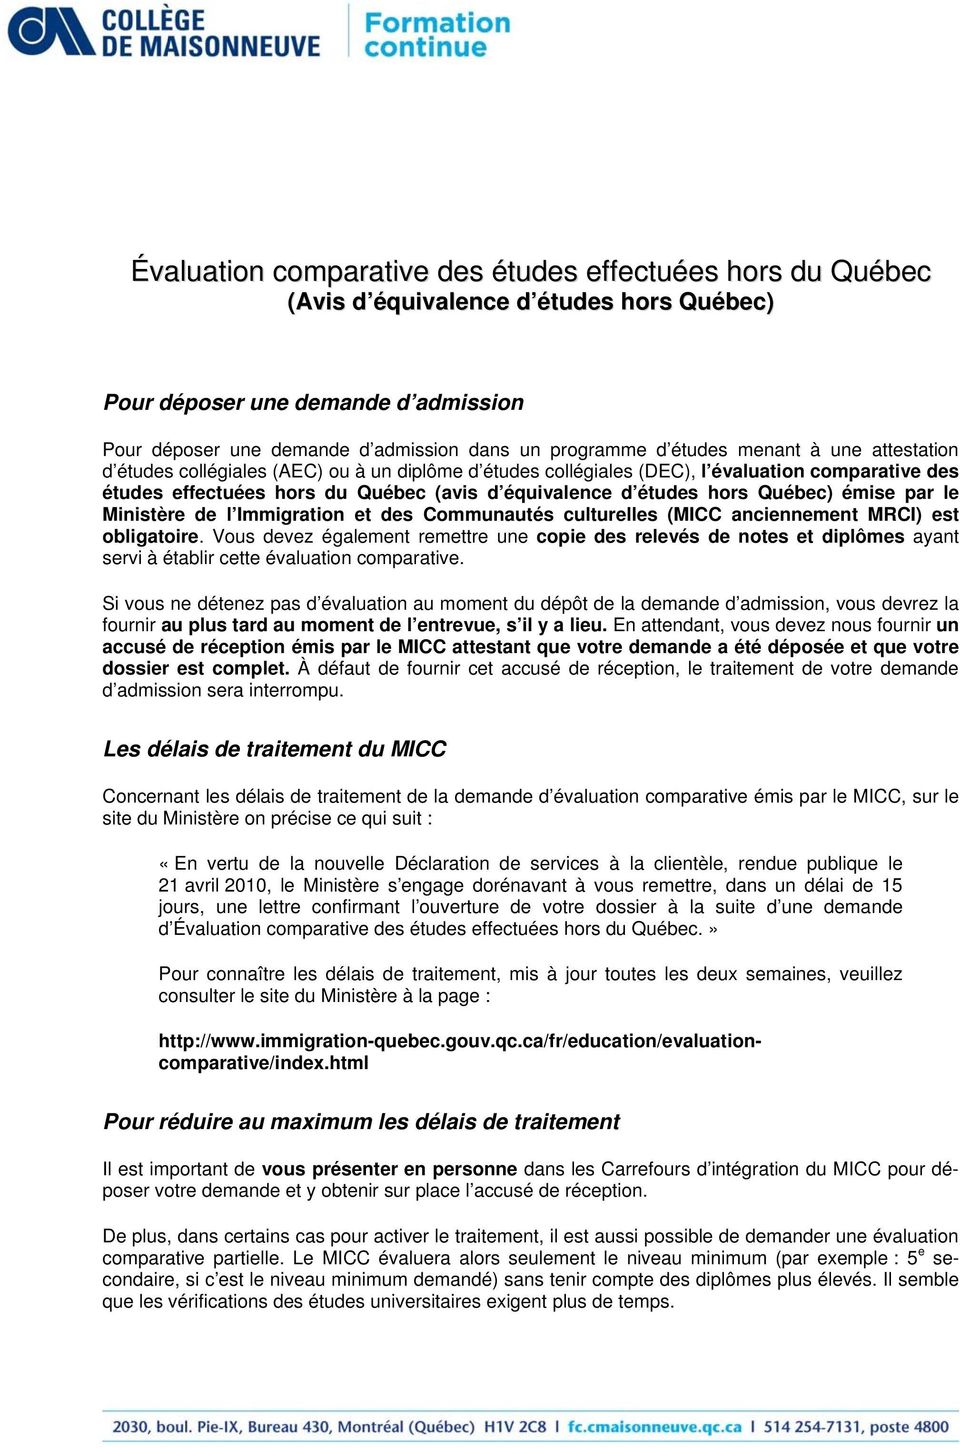 Québec) émise par le Ministère de l Immigration et des Communautés culturelles (MICC anciennement MRCI) est obligatoire.